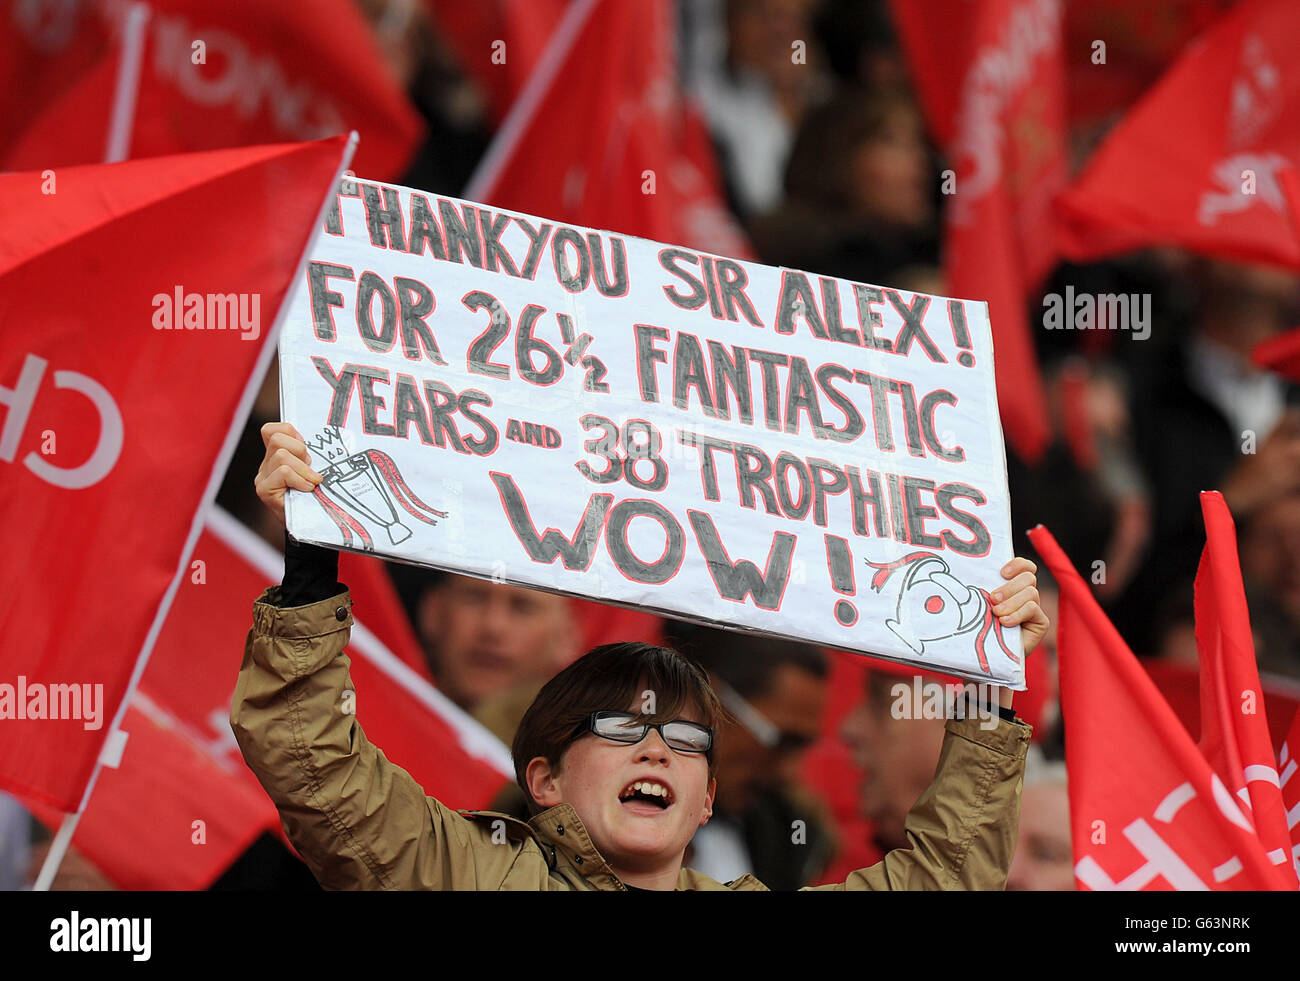 Un fan de Manchester United soutient son équipe et Sir Alex Ferguson avec une bannière qui se lit comme suit : « Thankyou Sir Alex! Pour 26 ans et demi fantastiques et 38 trophées. Ouah ! » Banque D'Images